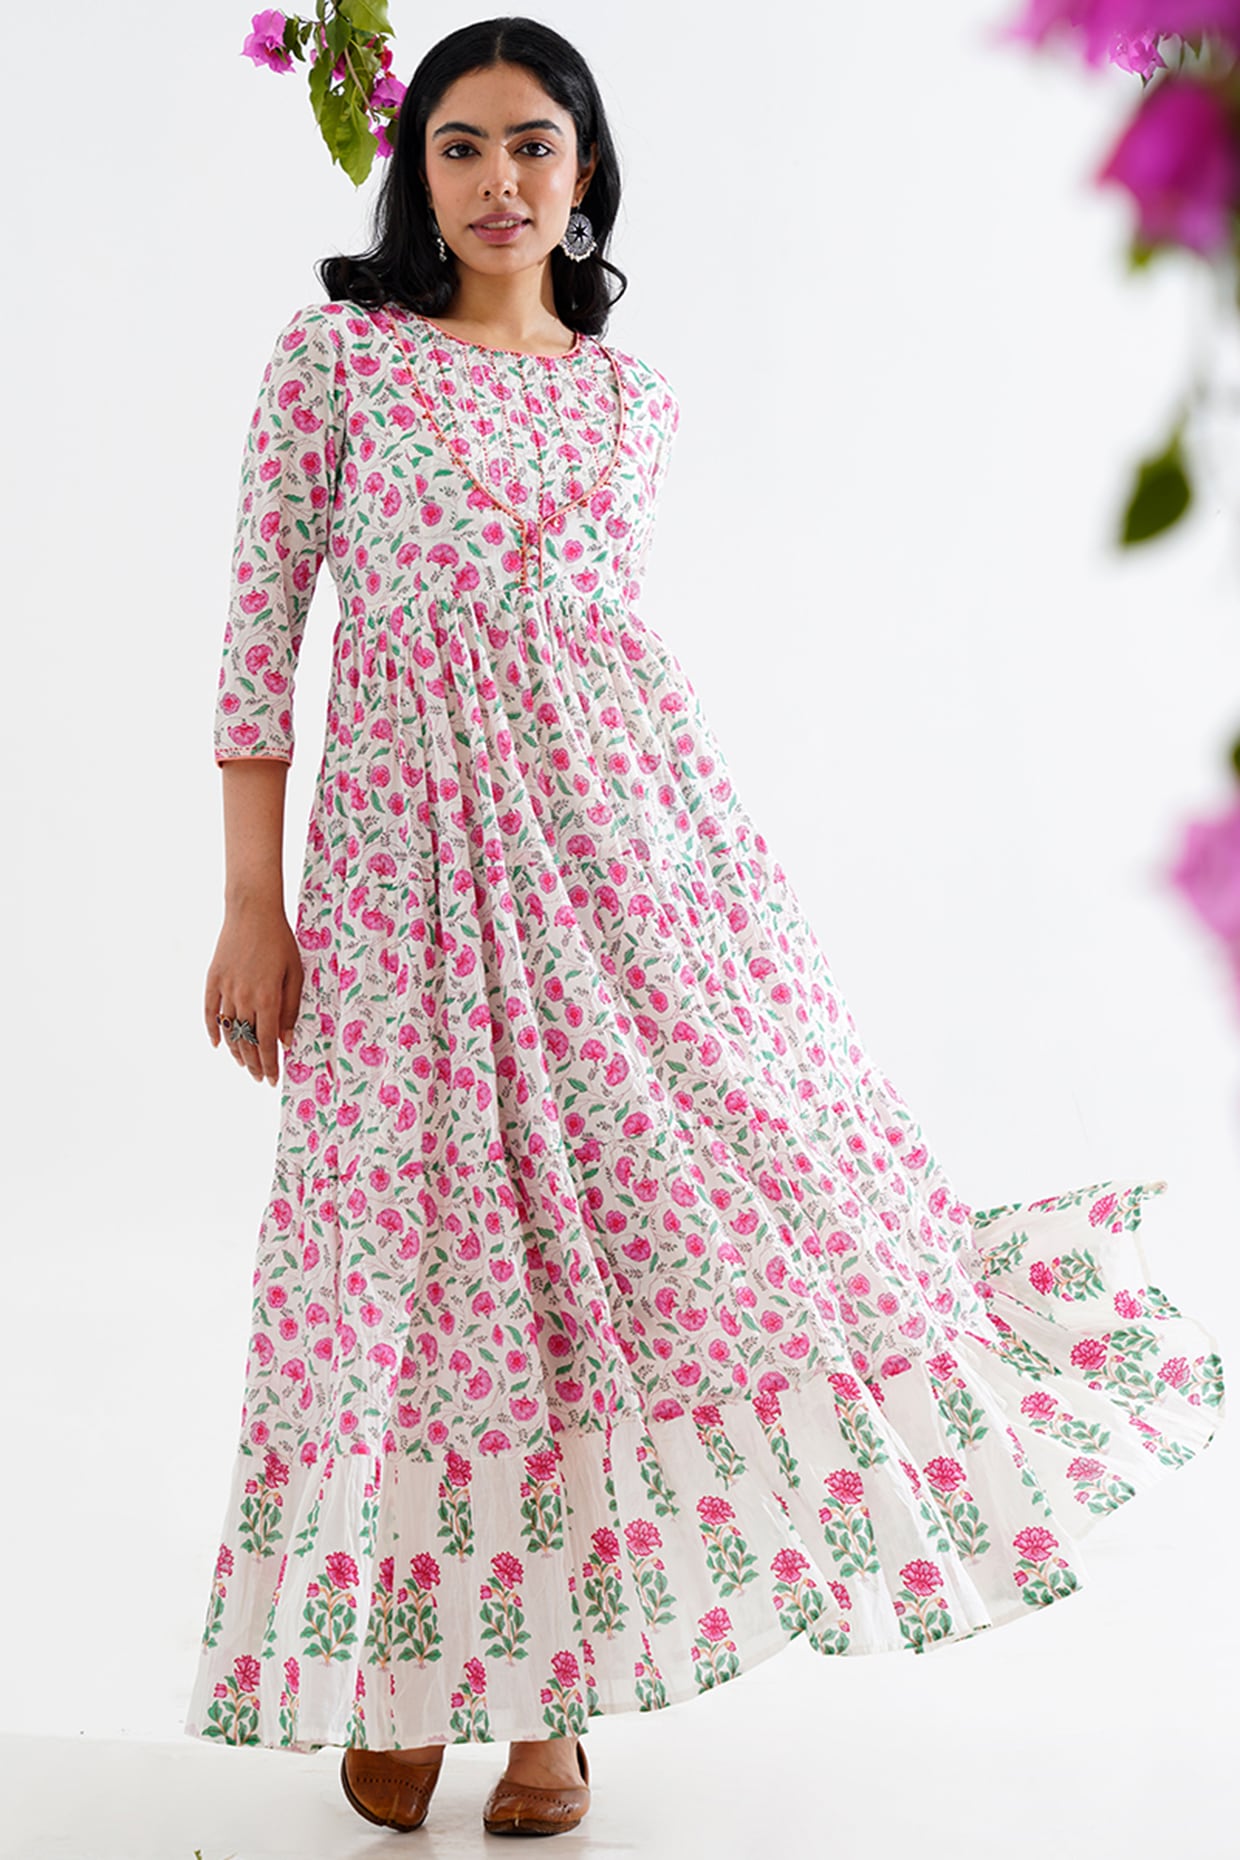 Festival Wear Pink Floral Anarkali Suit For Girls | Anarkali Dress Floral |  3d-mon.com